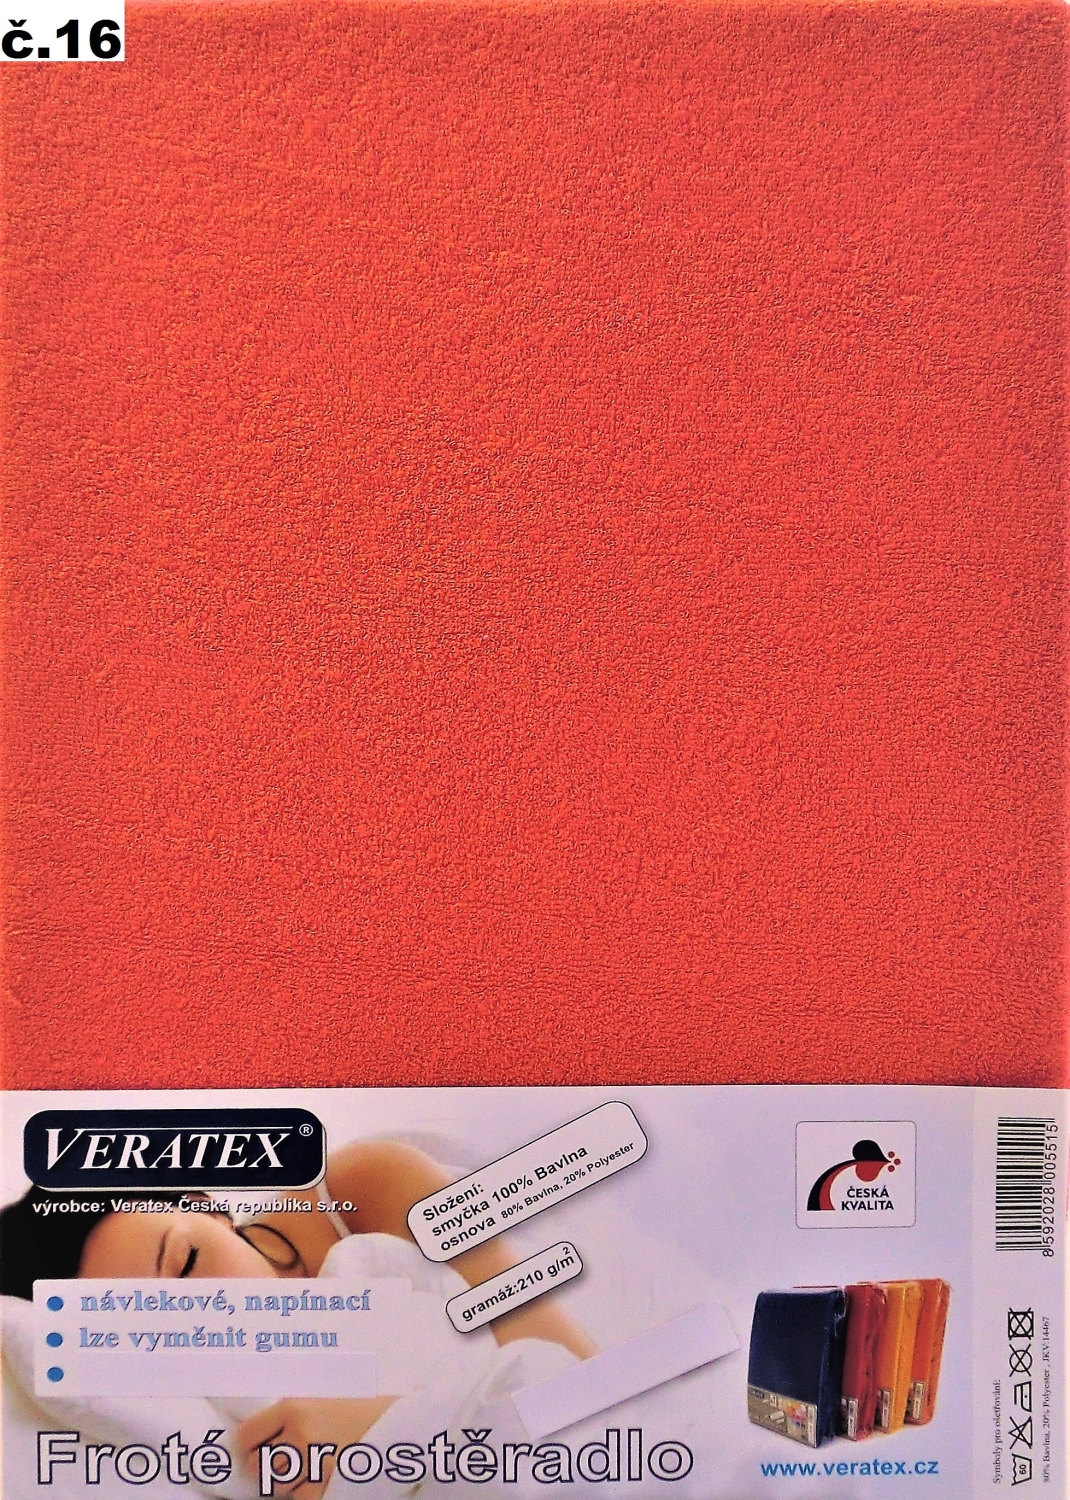 Veratex Froté prostěradlo 160x200 cm (č.16 malina)